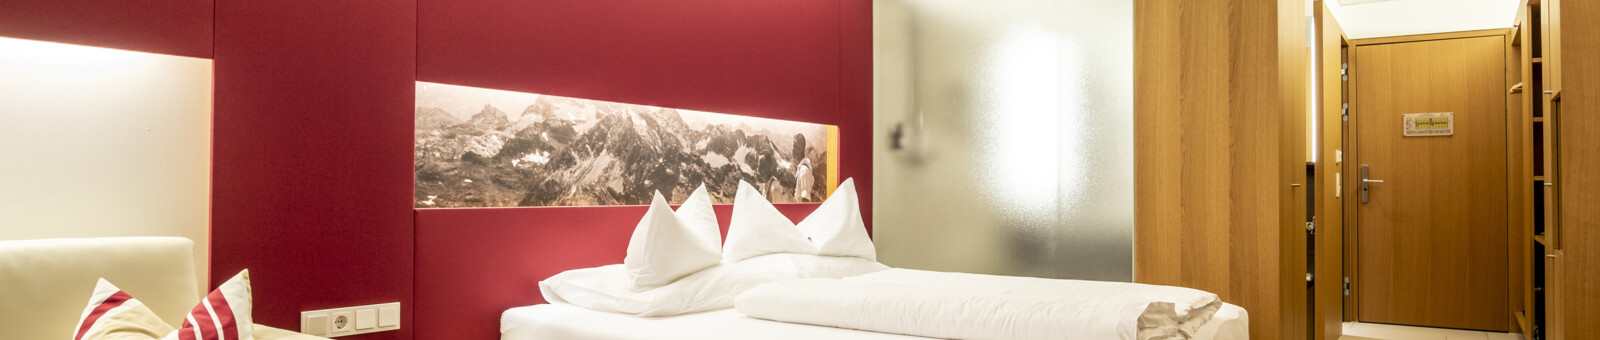     Bregenzerwald - Hotel rooms in the Sonne Lifestyle Resort Bregenzerwald 